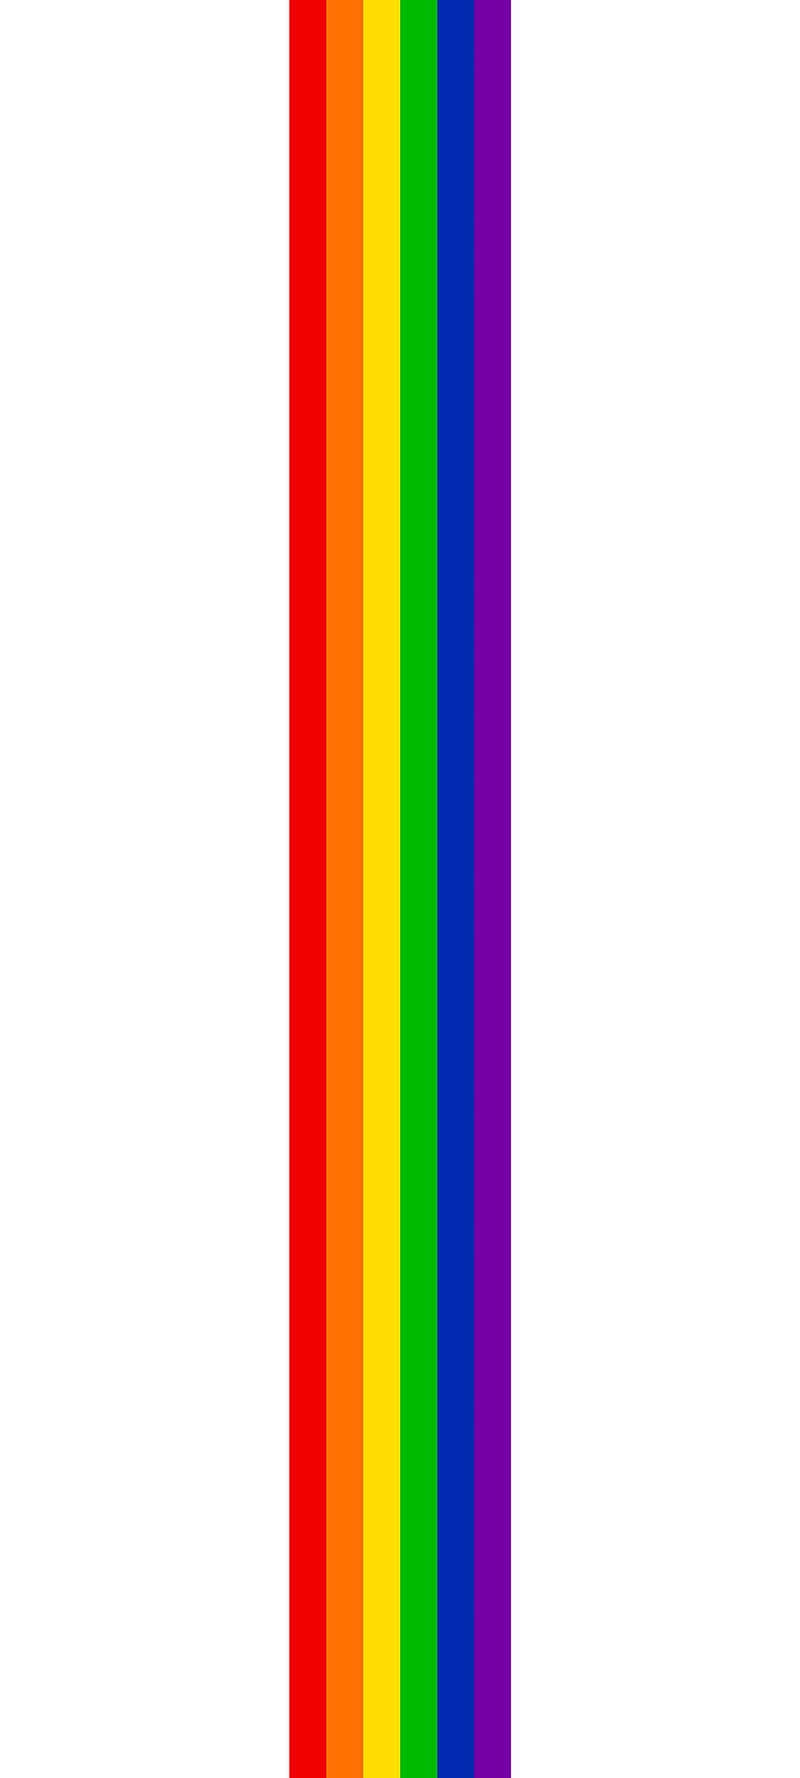 Tresammanflätade Regnbågsfärger Som Representerar Pride-flaggan.